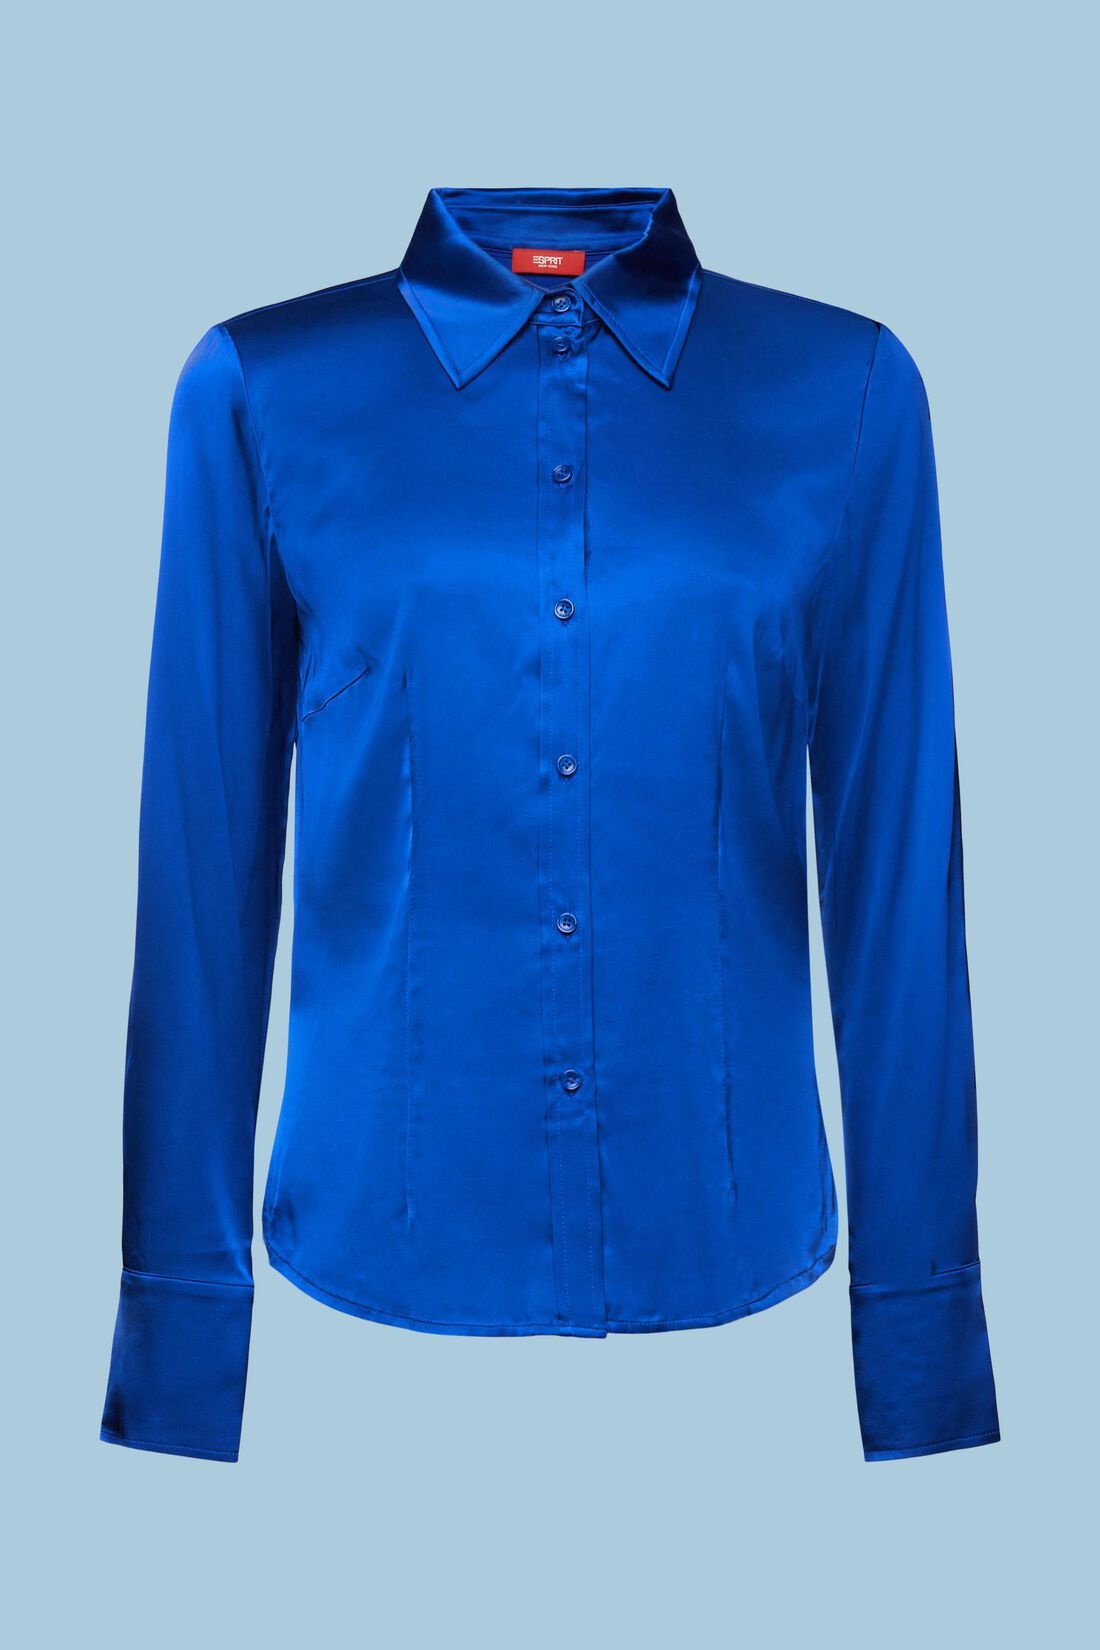 ESPRIT Satin-Optik Bluse Cotton / - | Blue Blau - Blues Bright